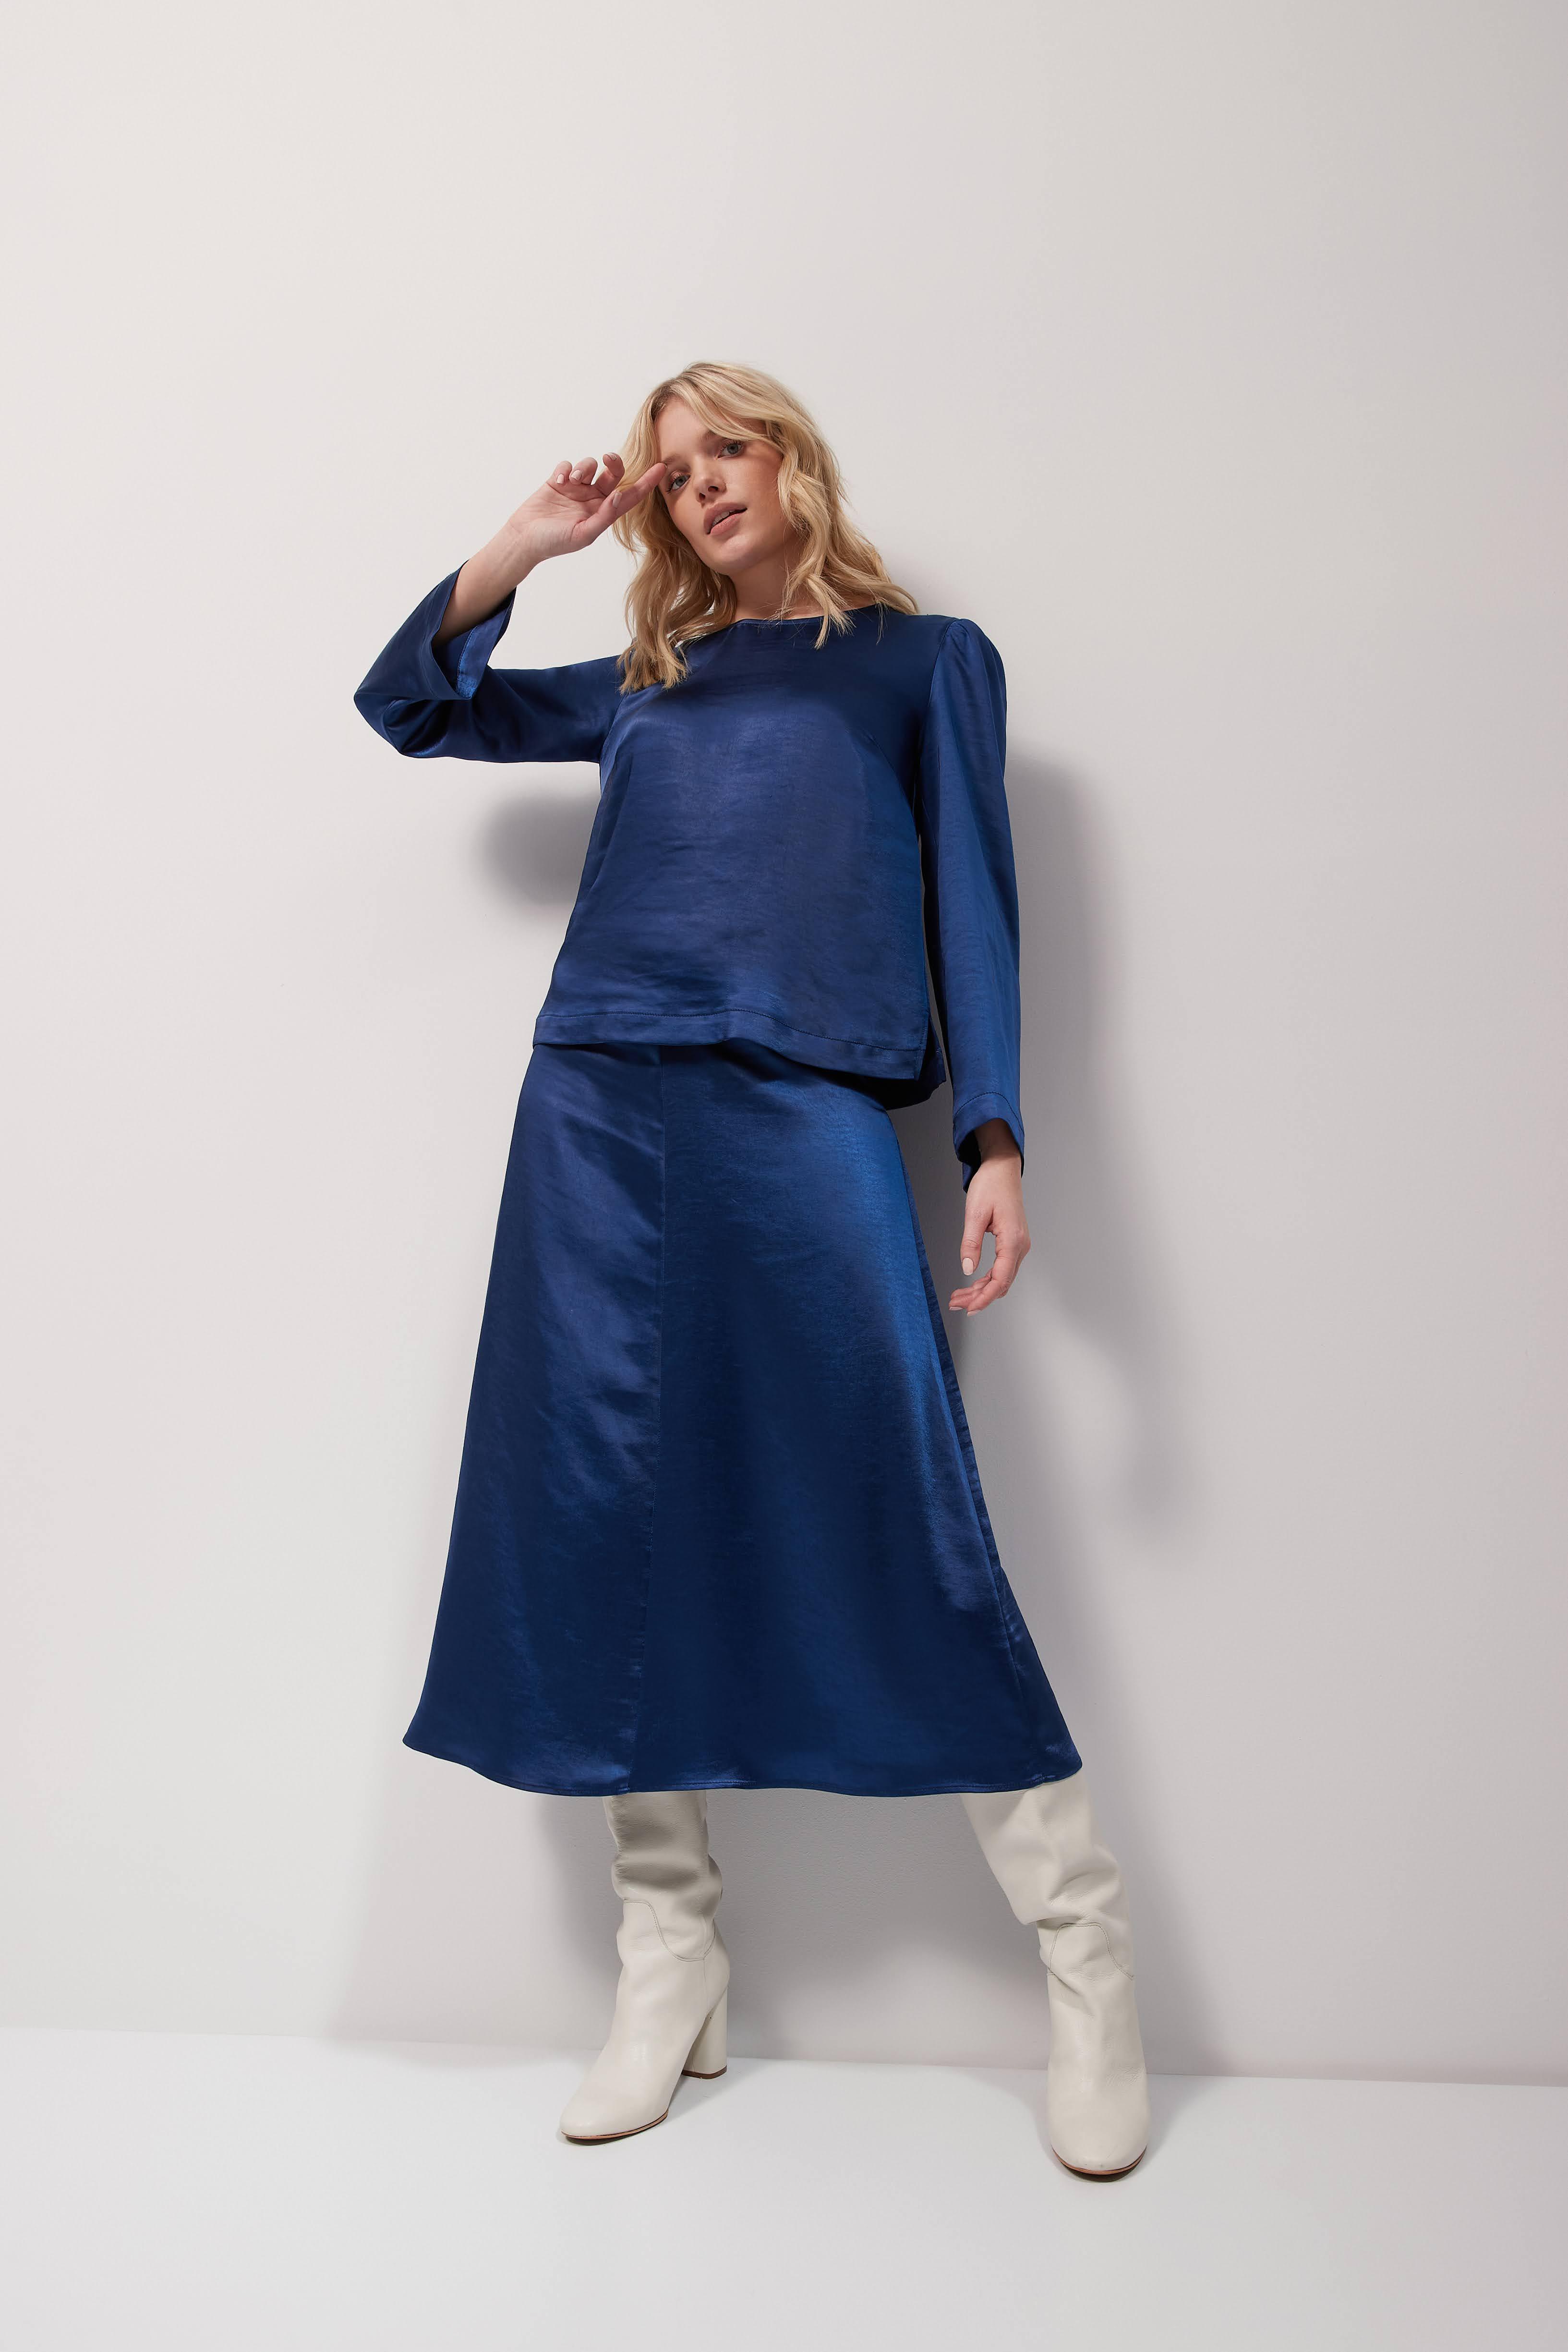 Bloes Blauw Her ( Billie 133/685 ) - Delaere Womenswear